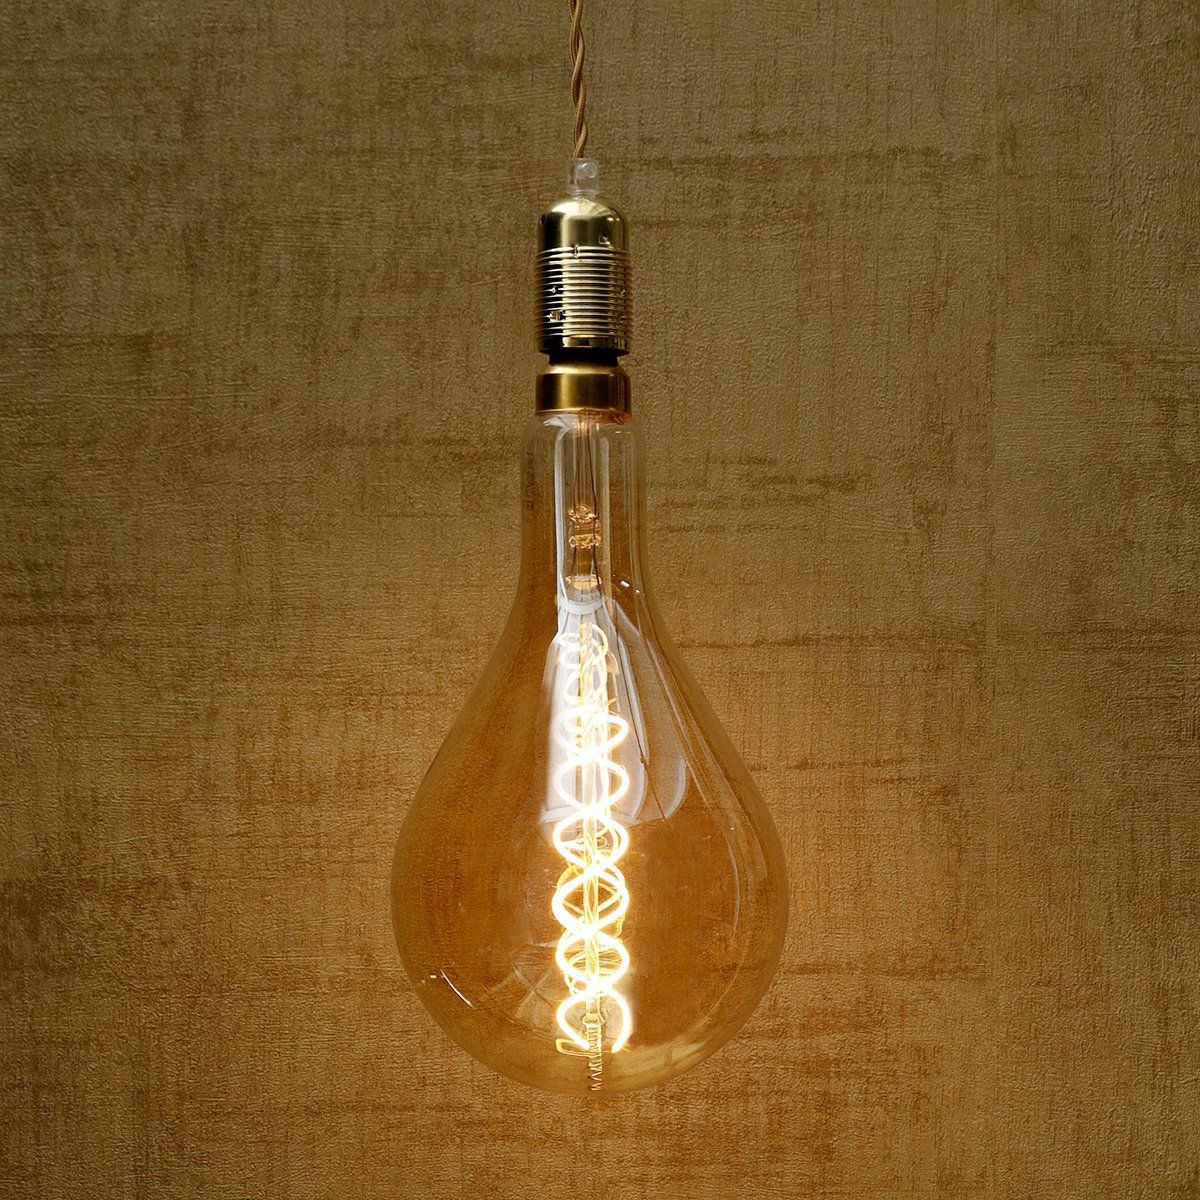 Ampoule LED E27 Philips décorative en forme de champignon